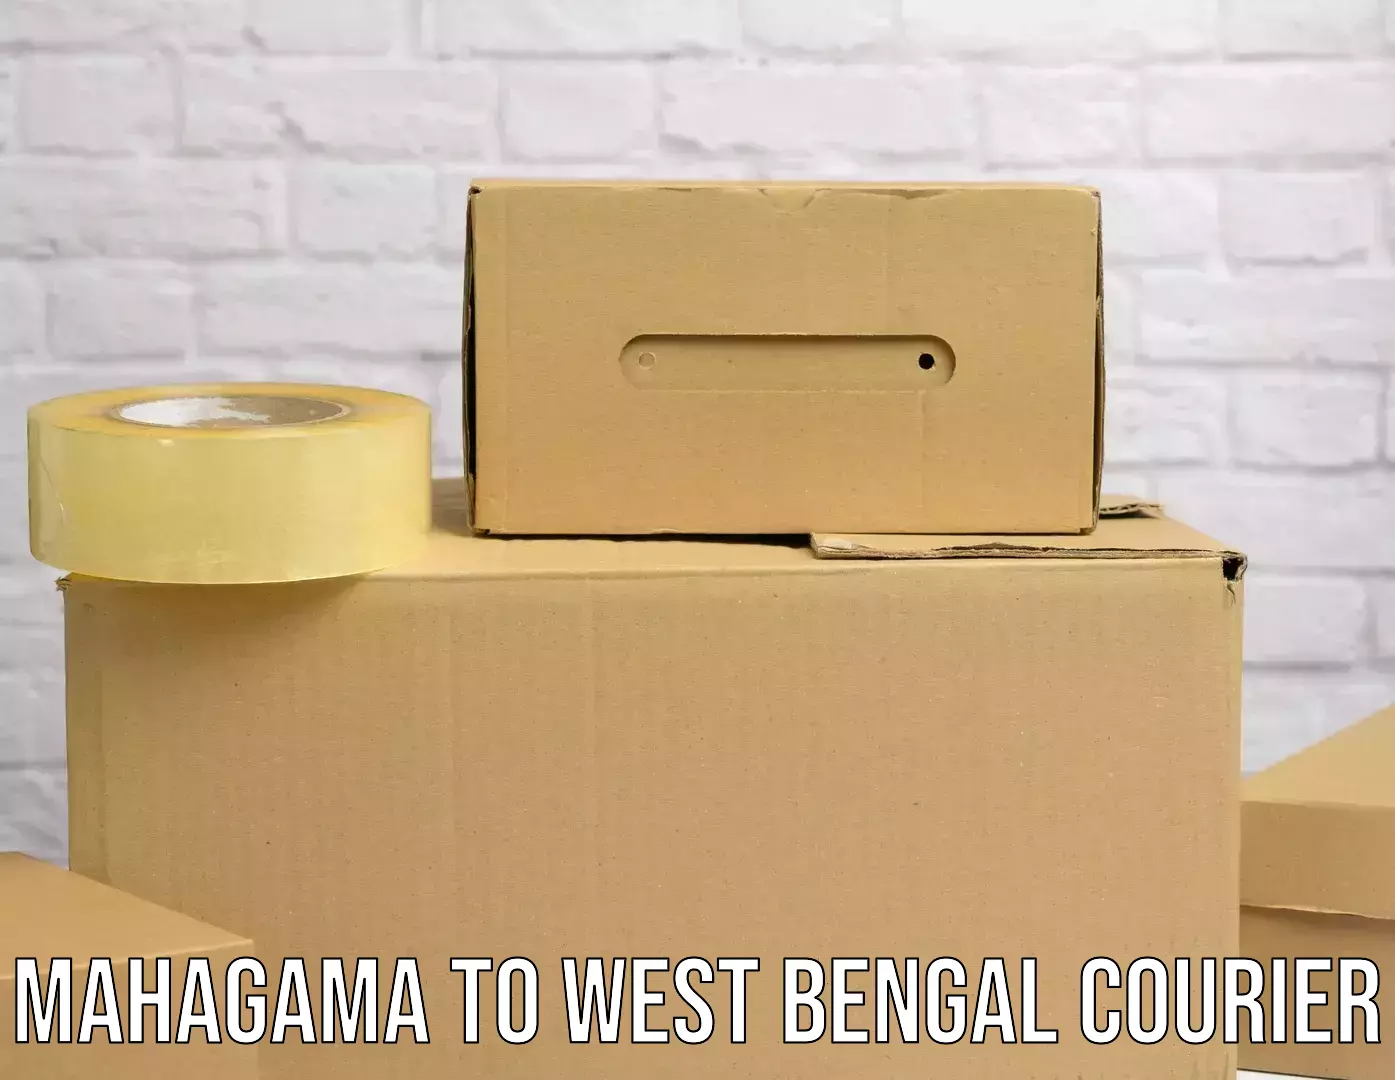 Courier service comparison Mahagama to Raniganj